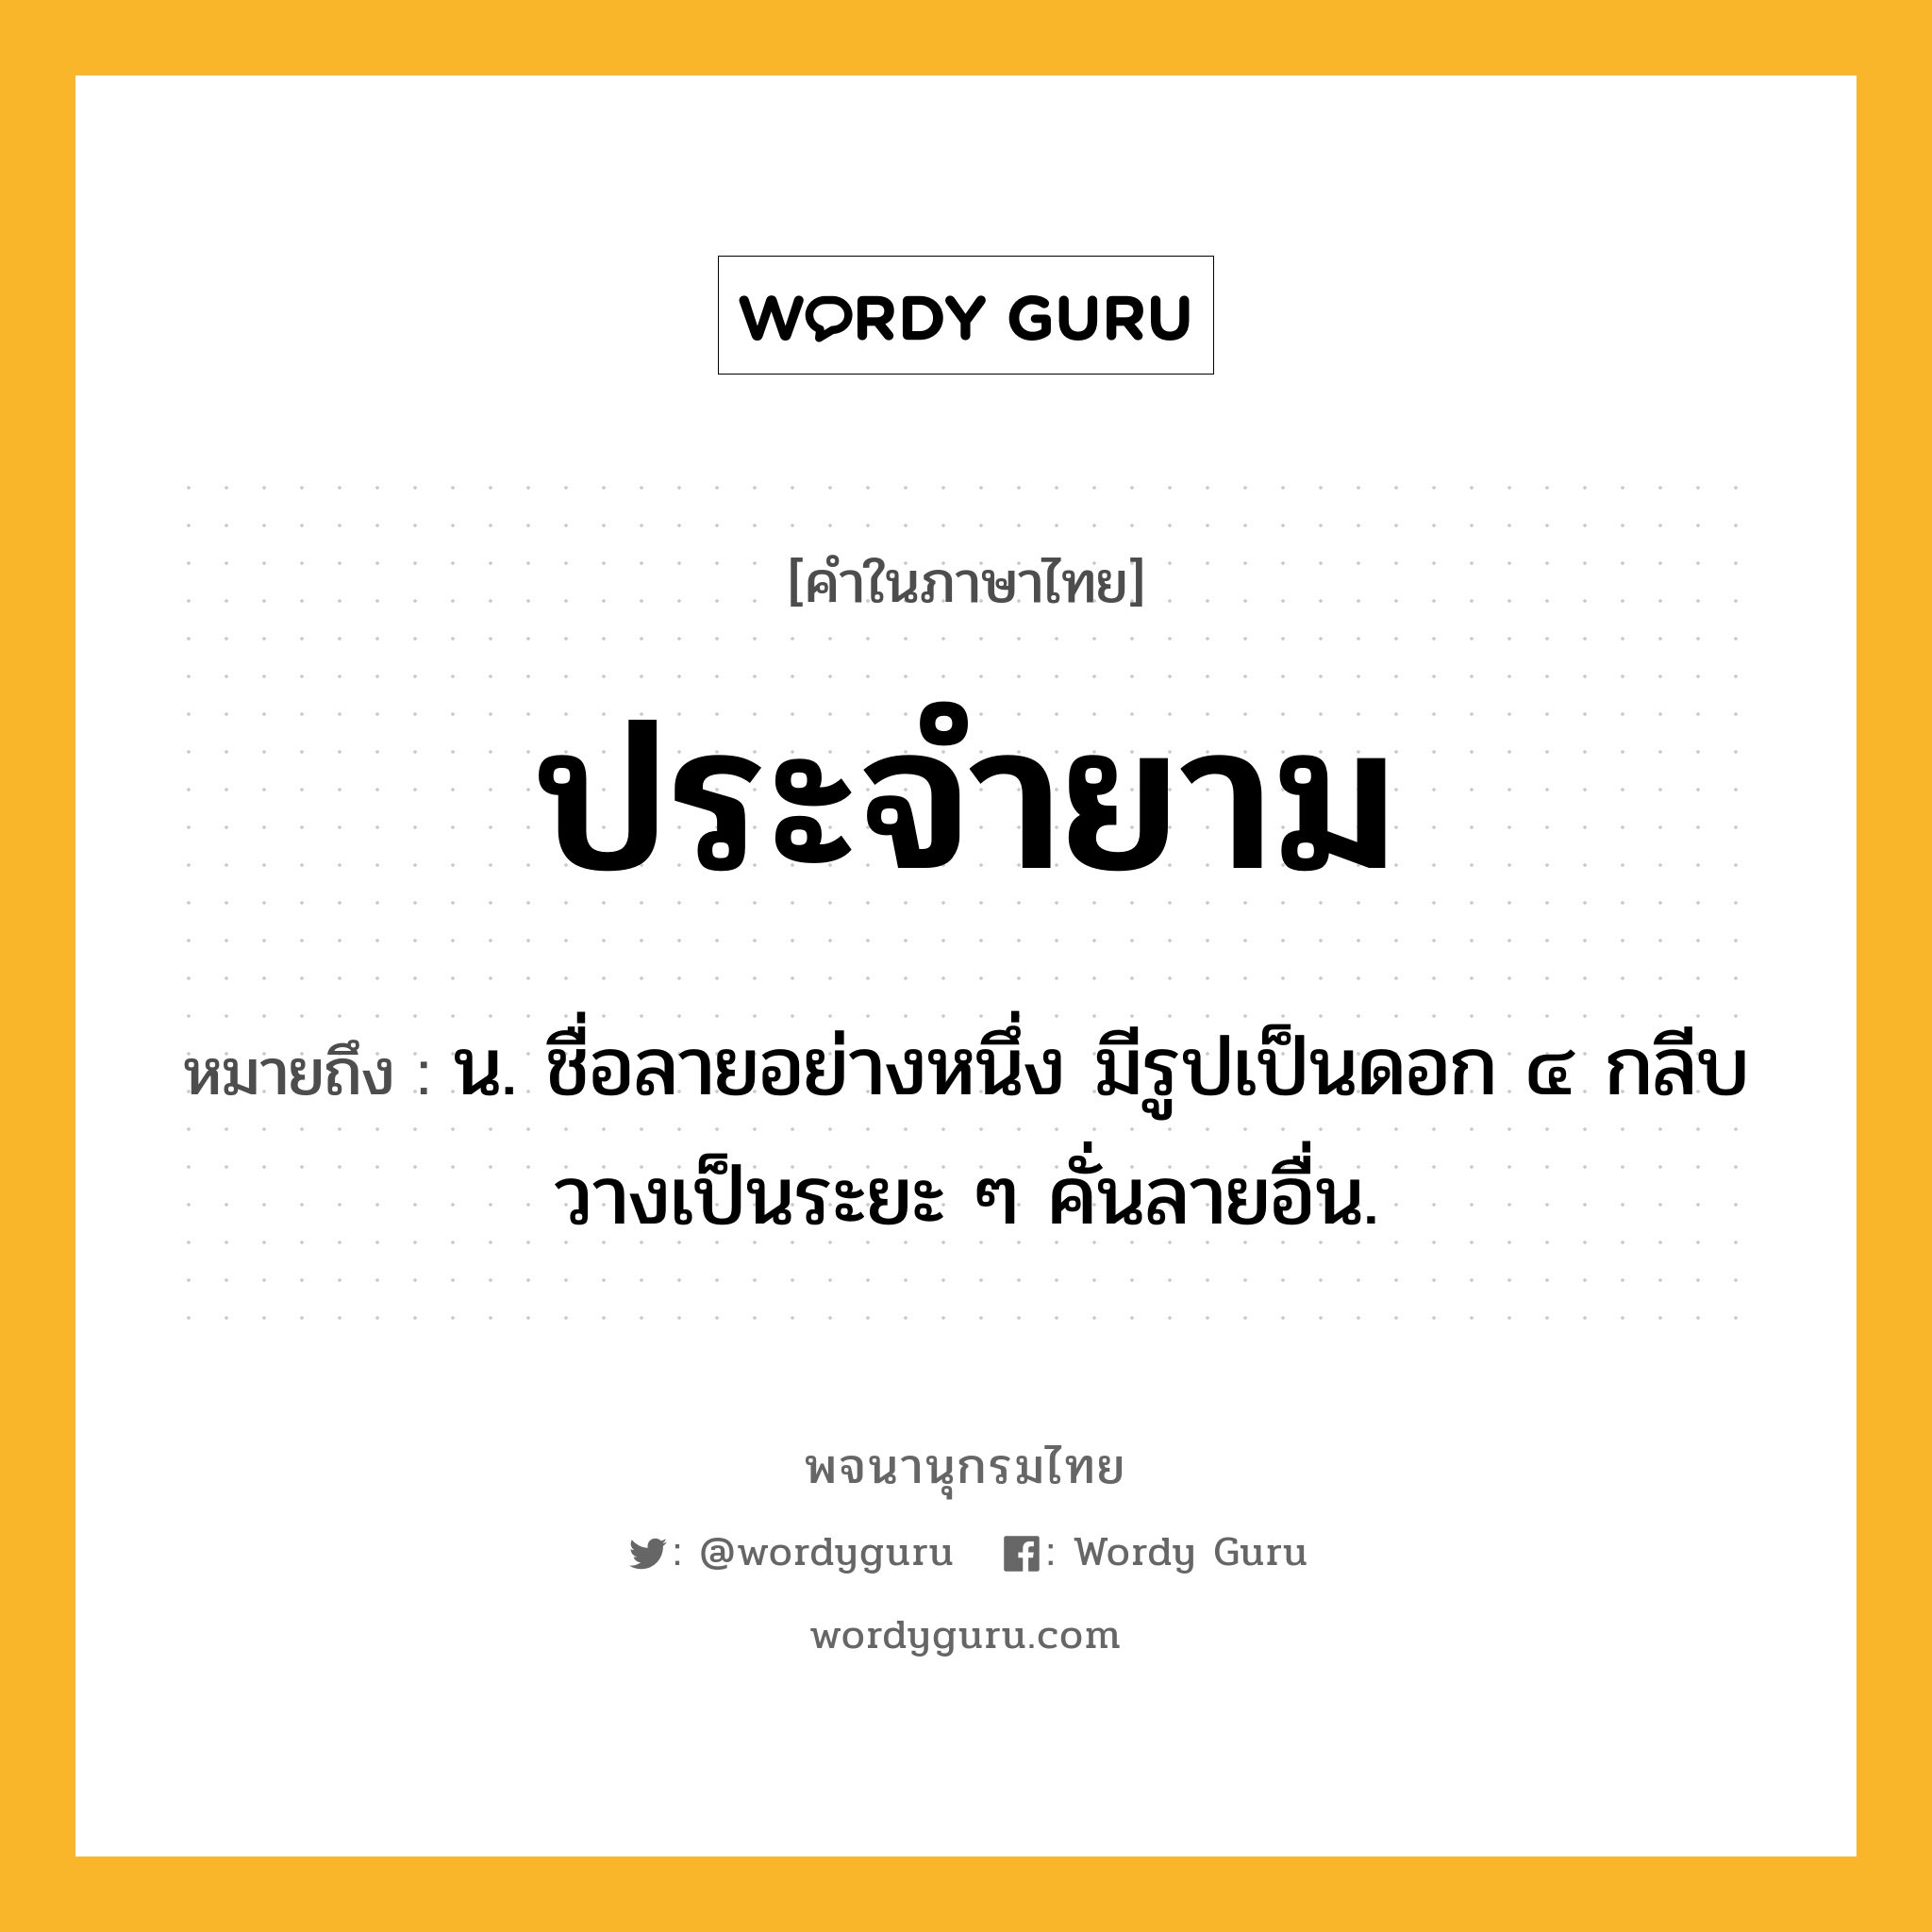 ประจำยาม ความหมาย หมายถึงอะไร?, คำในภาษาไทย ประจำยาม หมายถึง น. ชื่อลายอย่างหนึ่ง มีรูปเป็นดอก ๔ กลีบ วางเป็นระยะ ๆ คั่นลายอื่น.